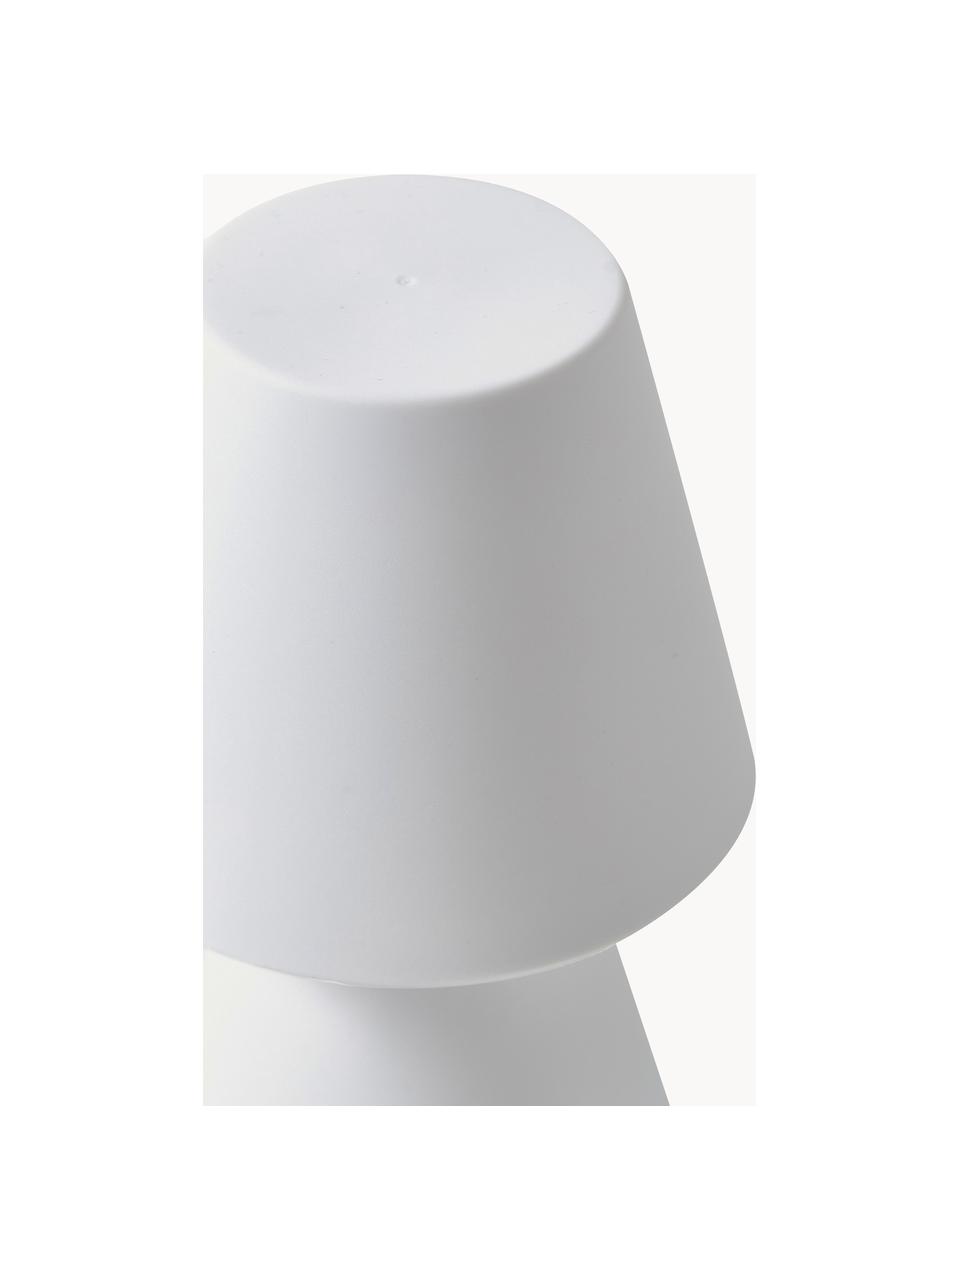 Mobilna lampa stołowa LED z funkcją przyciemniania Lola, Biały, Ø 11 x W 20 cm